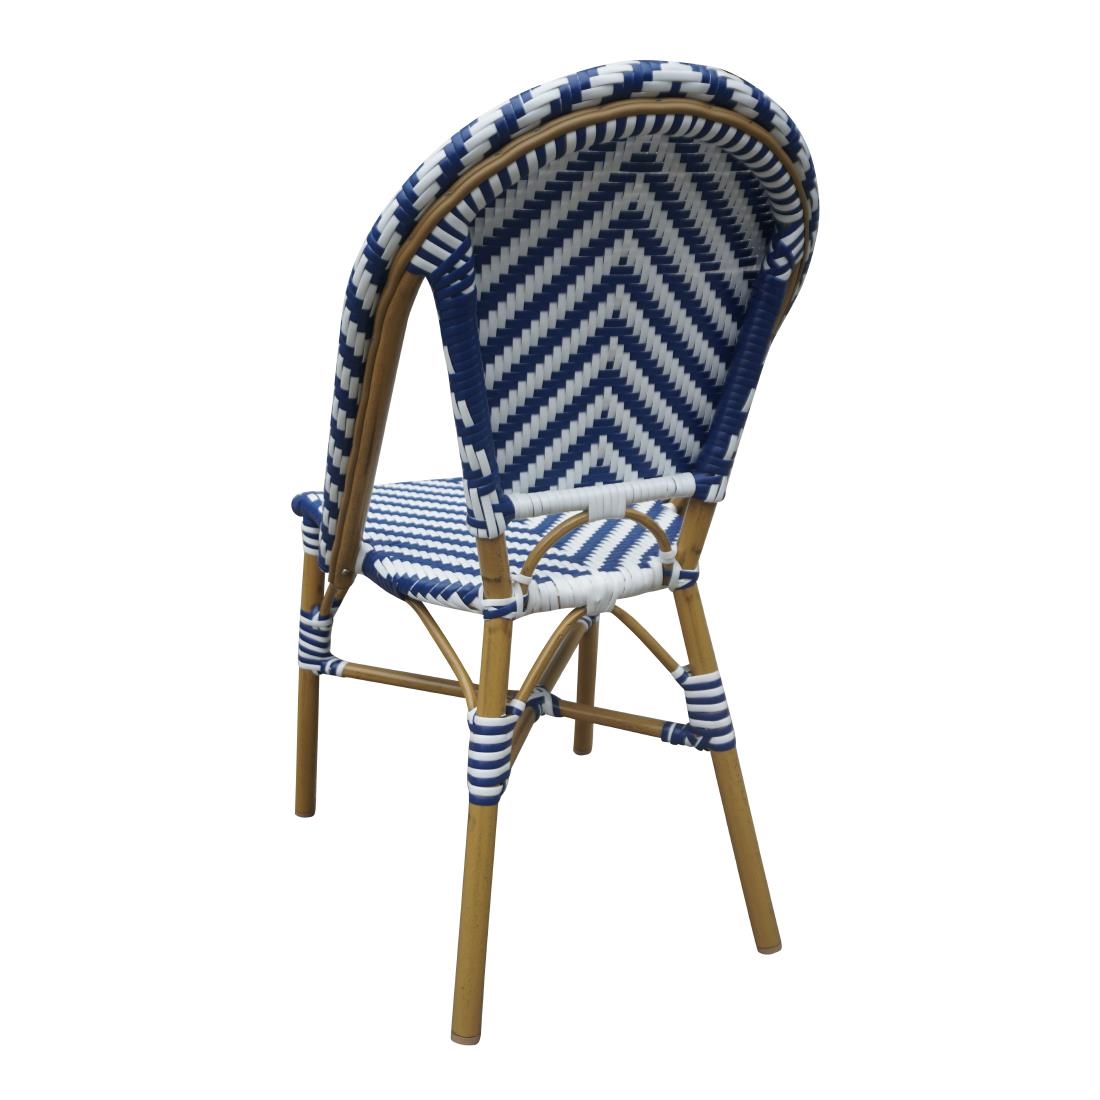 Bolero Rattan Beistellstuhl im Pariser Stil Blau (2 Stück)